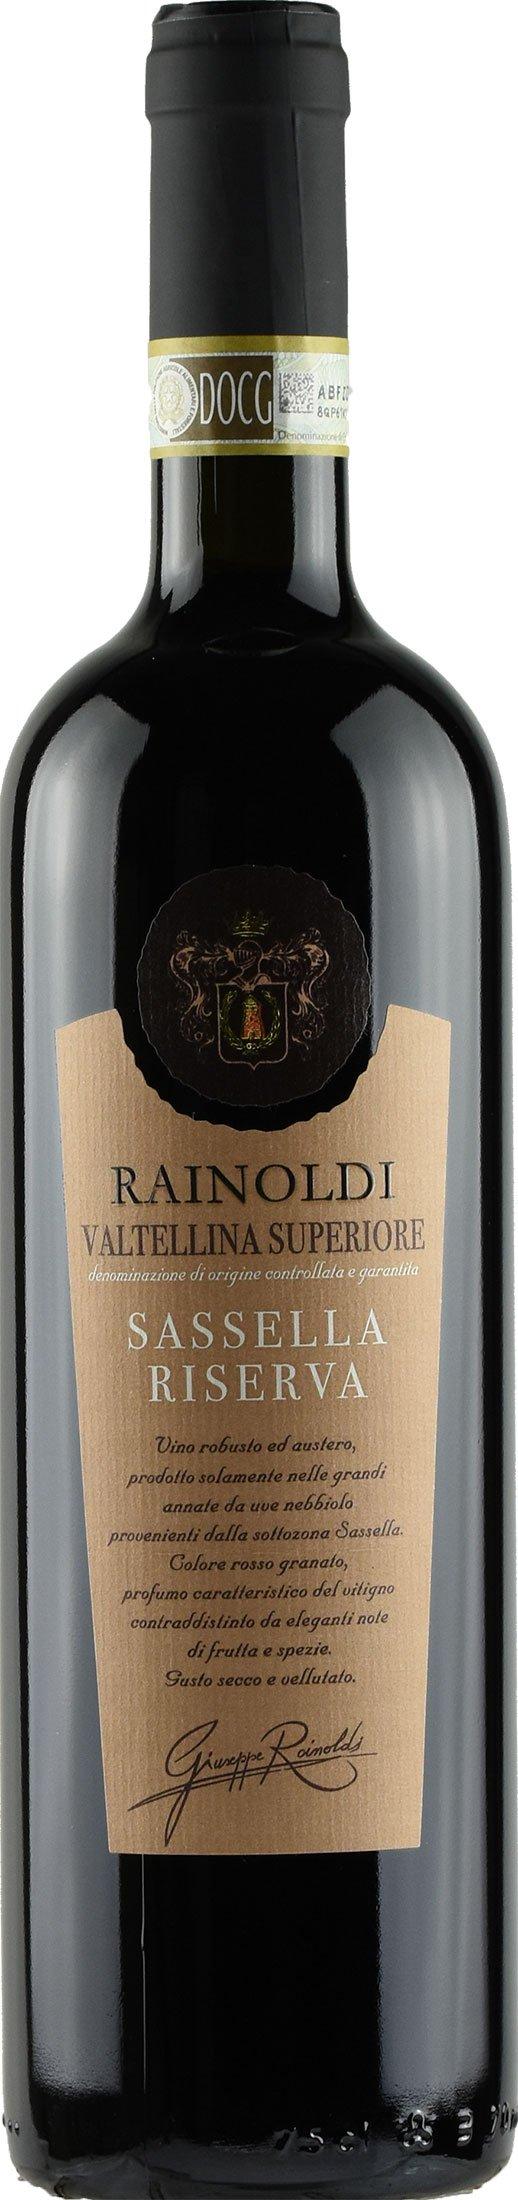 Aldo Rainoldi Valtellina Superiore Sassella 2015 750ml